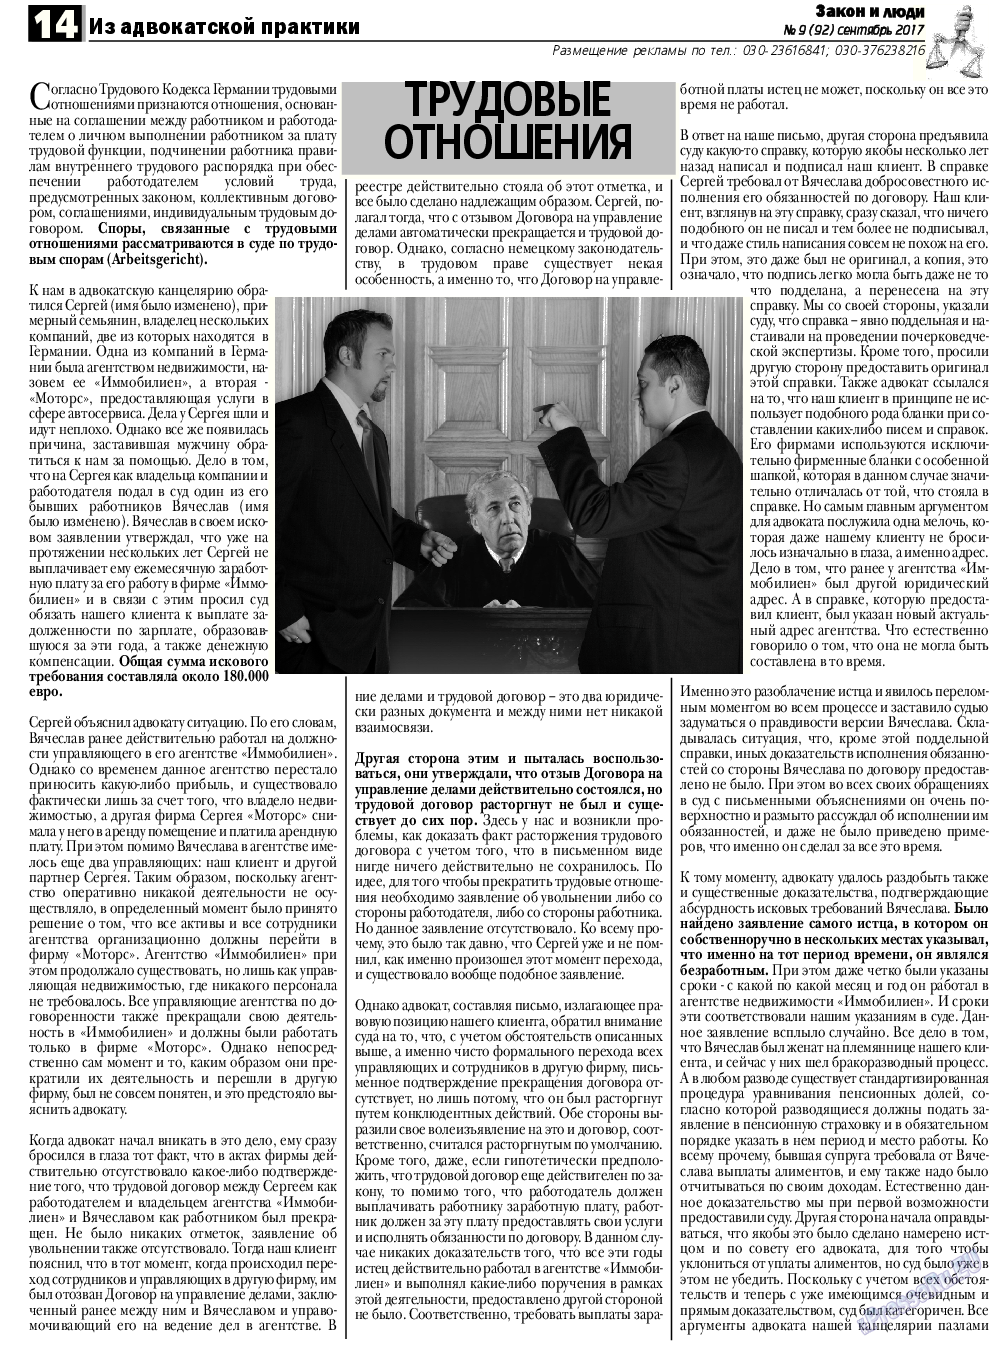 Закон и люди, газета. 2017 №9 стр.14